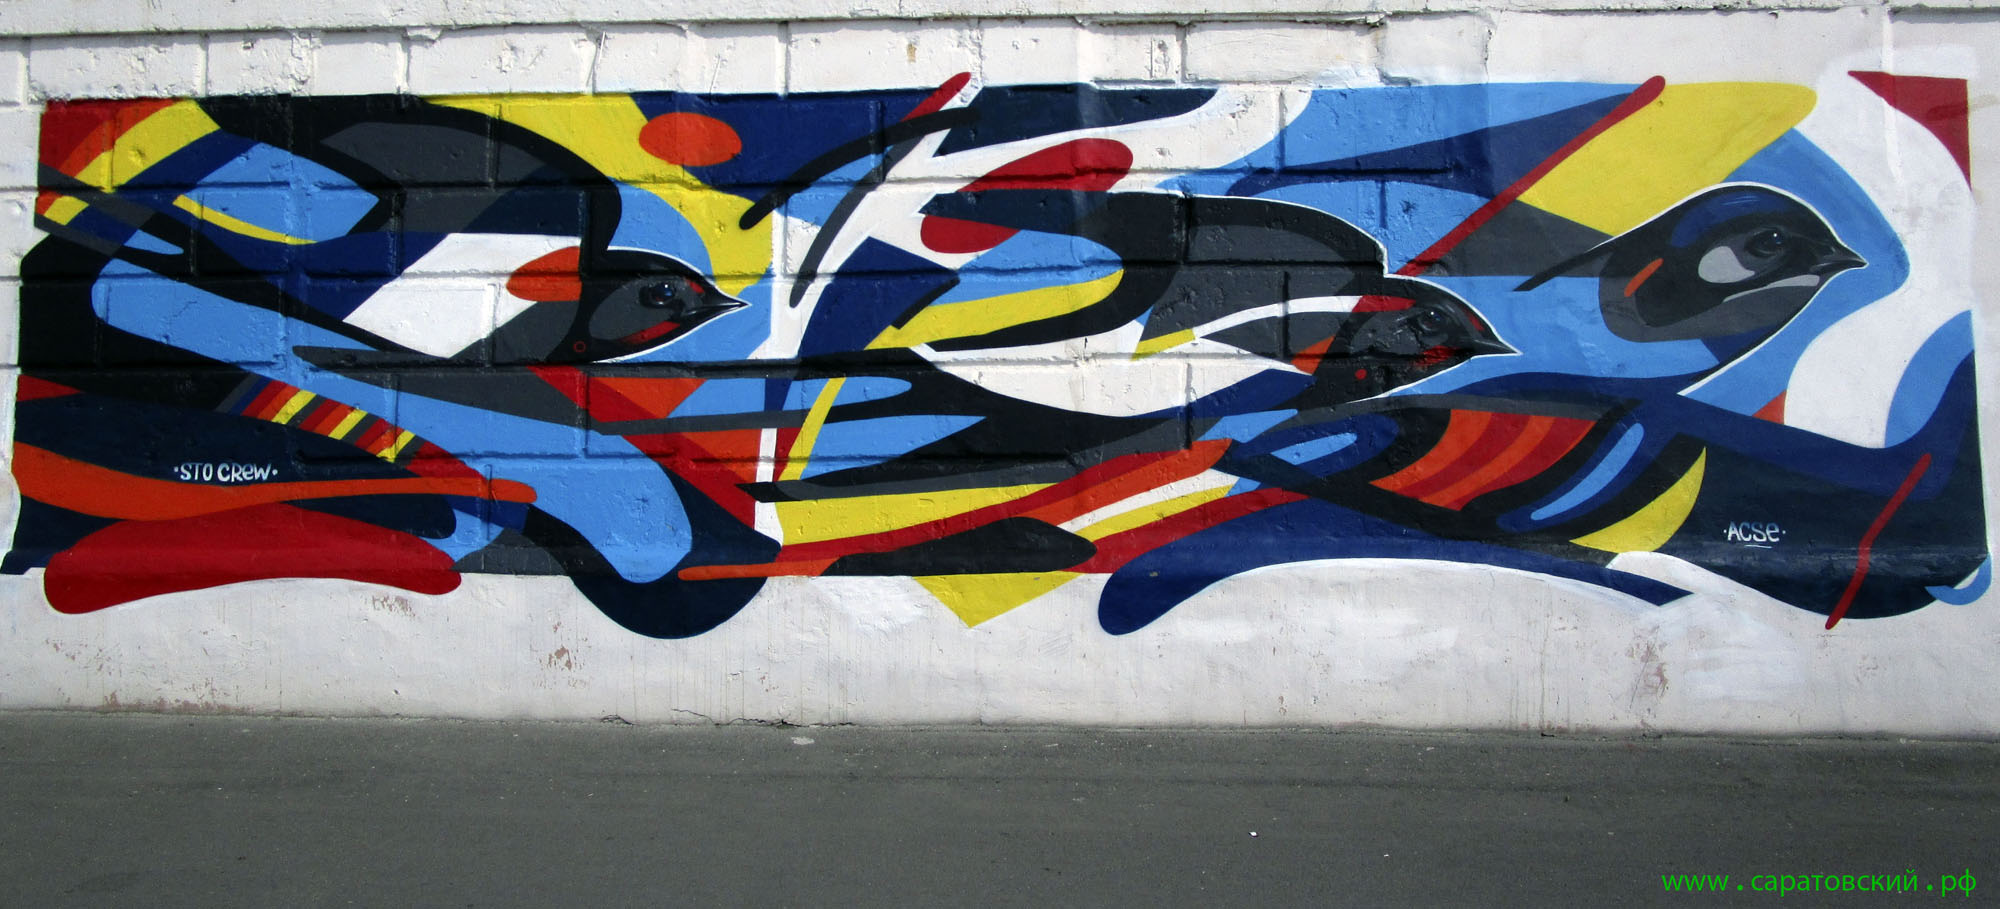 Набережная Саратова, граффити: стихотворение 'Ласточка' Гавриила Державина и Саратов